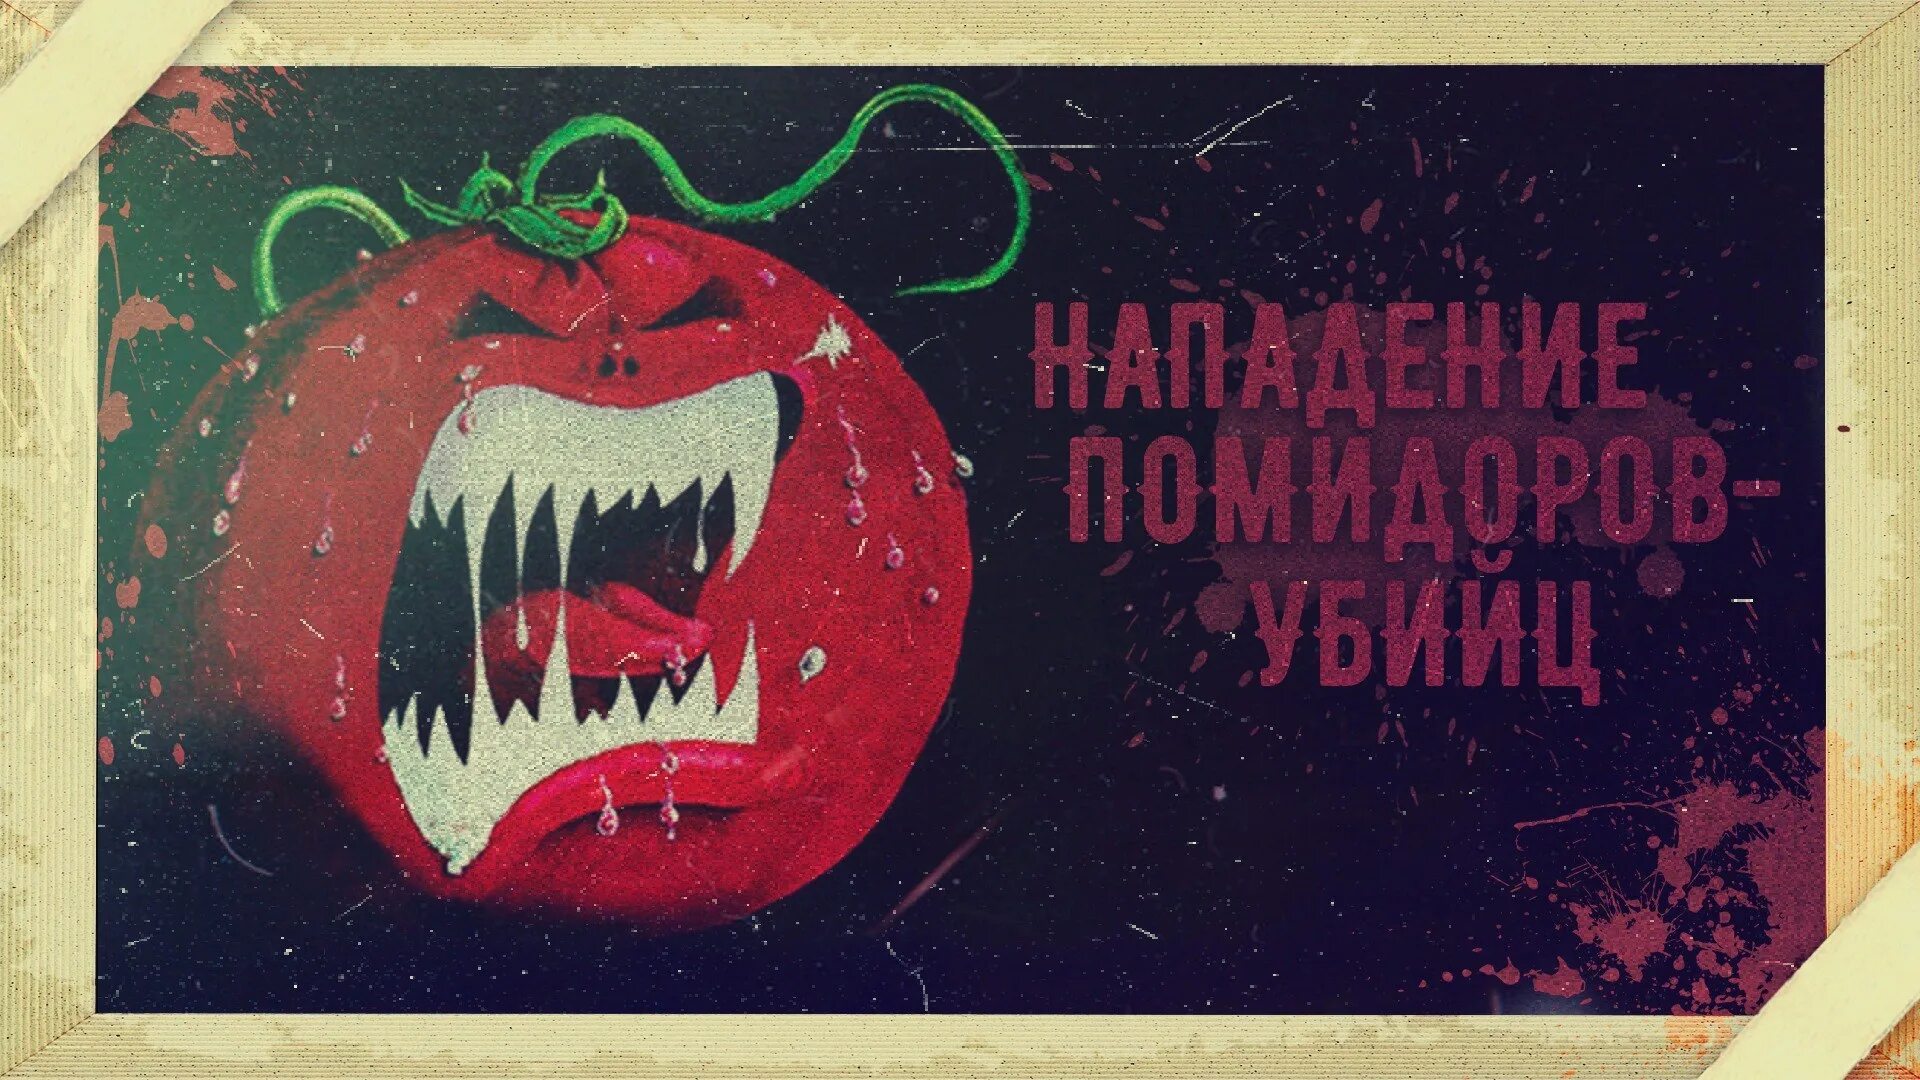 Нападение помидоров. Атака помидоров-убийц 1978. Гигантские помидоры убийцы. Нашествие помидоров убийц.